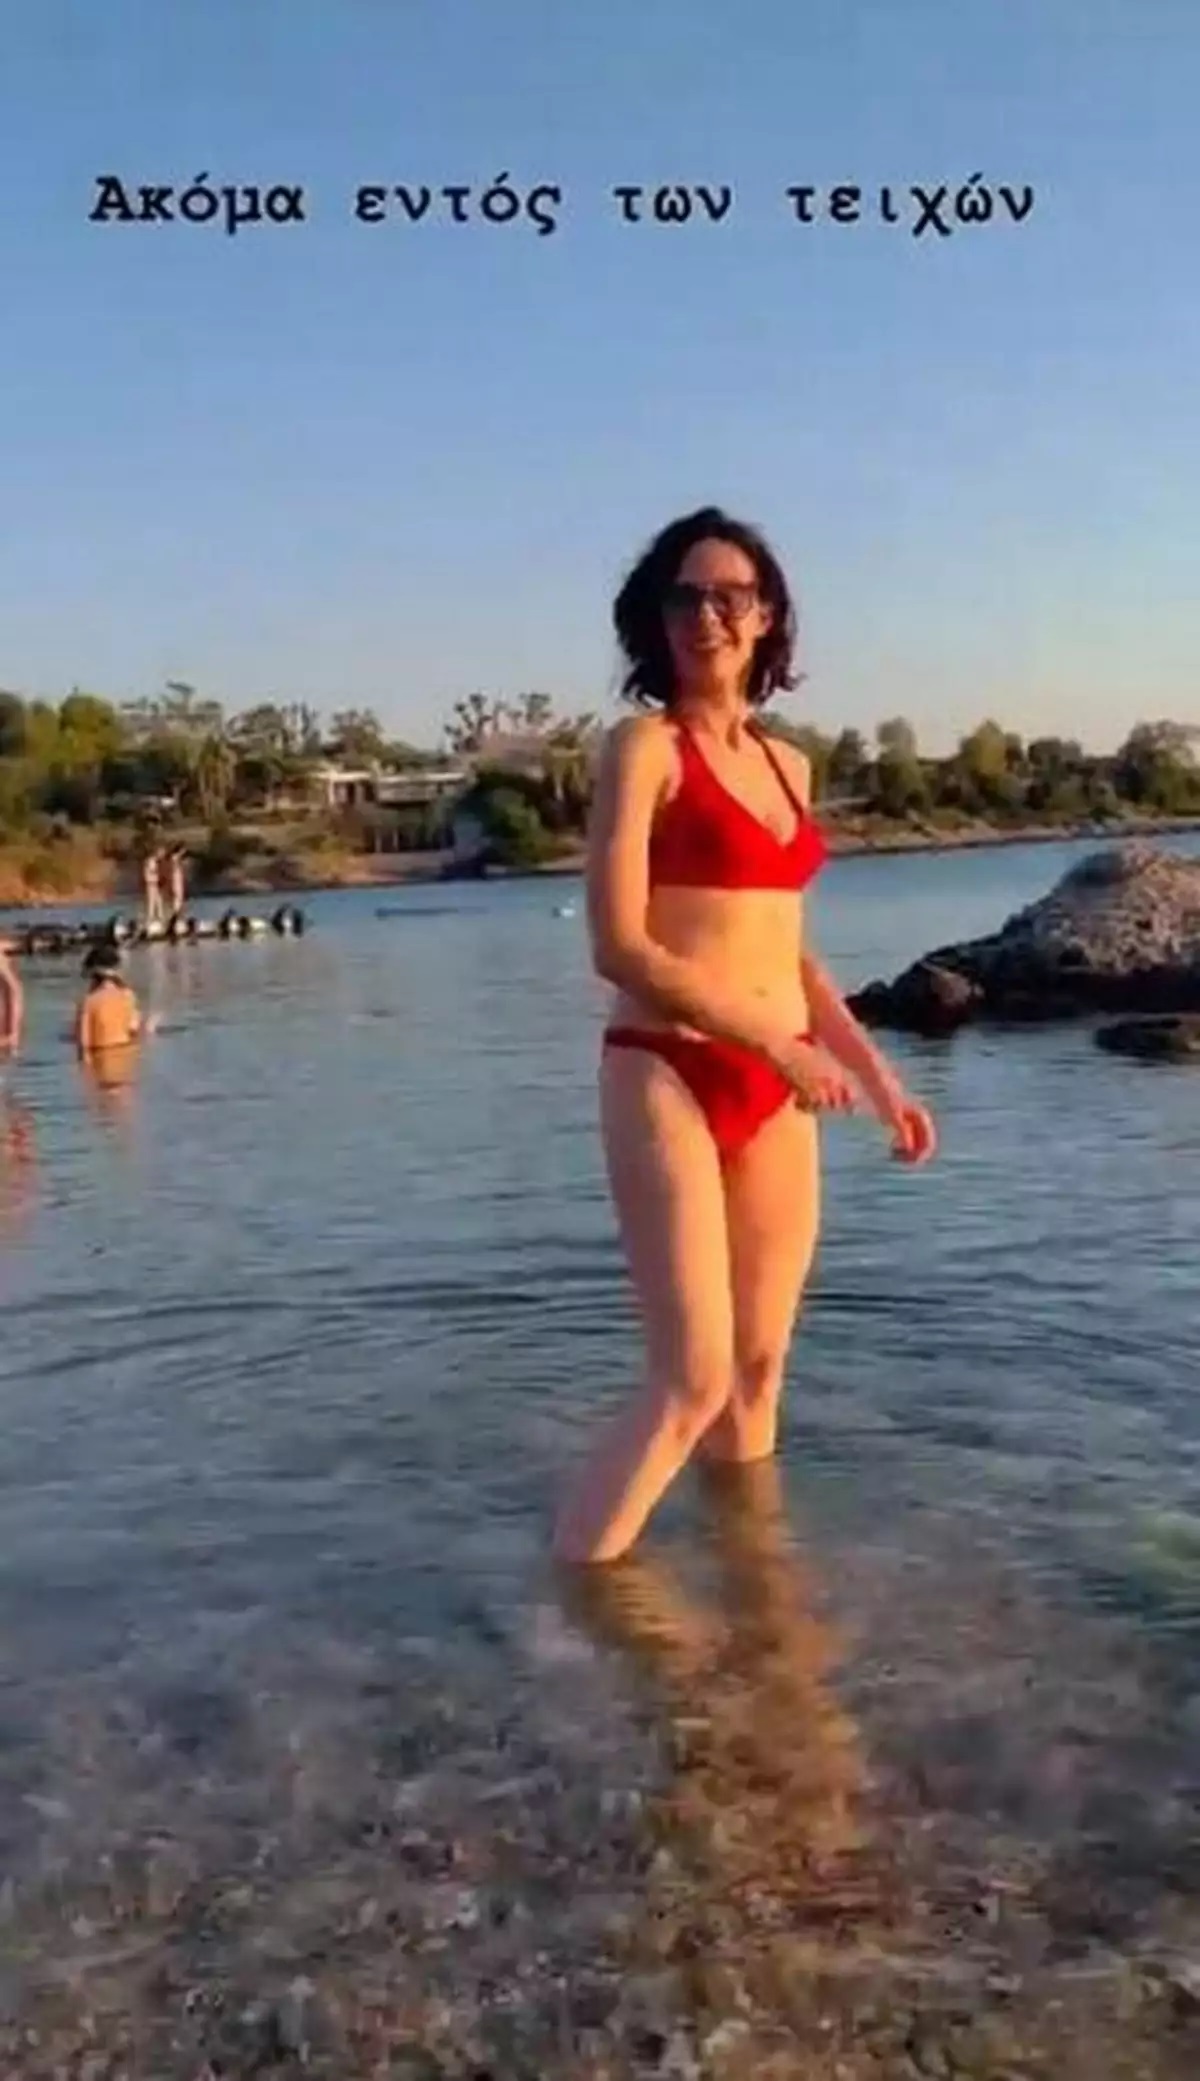 Βάζει τα γυαλιά σε πολλές: Η Μαριλίτα Λαμπροπούλου πόζαρε με κόκκινο μπικίνι στην παραλία και μας άφησε άφωνους! (εικόνα)